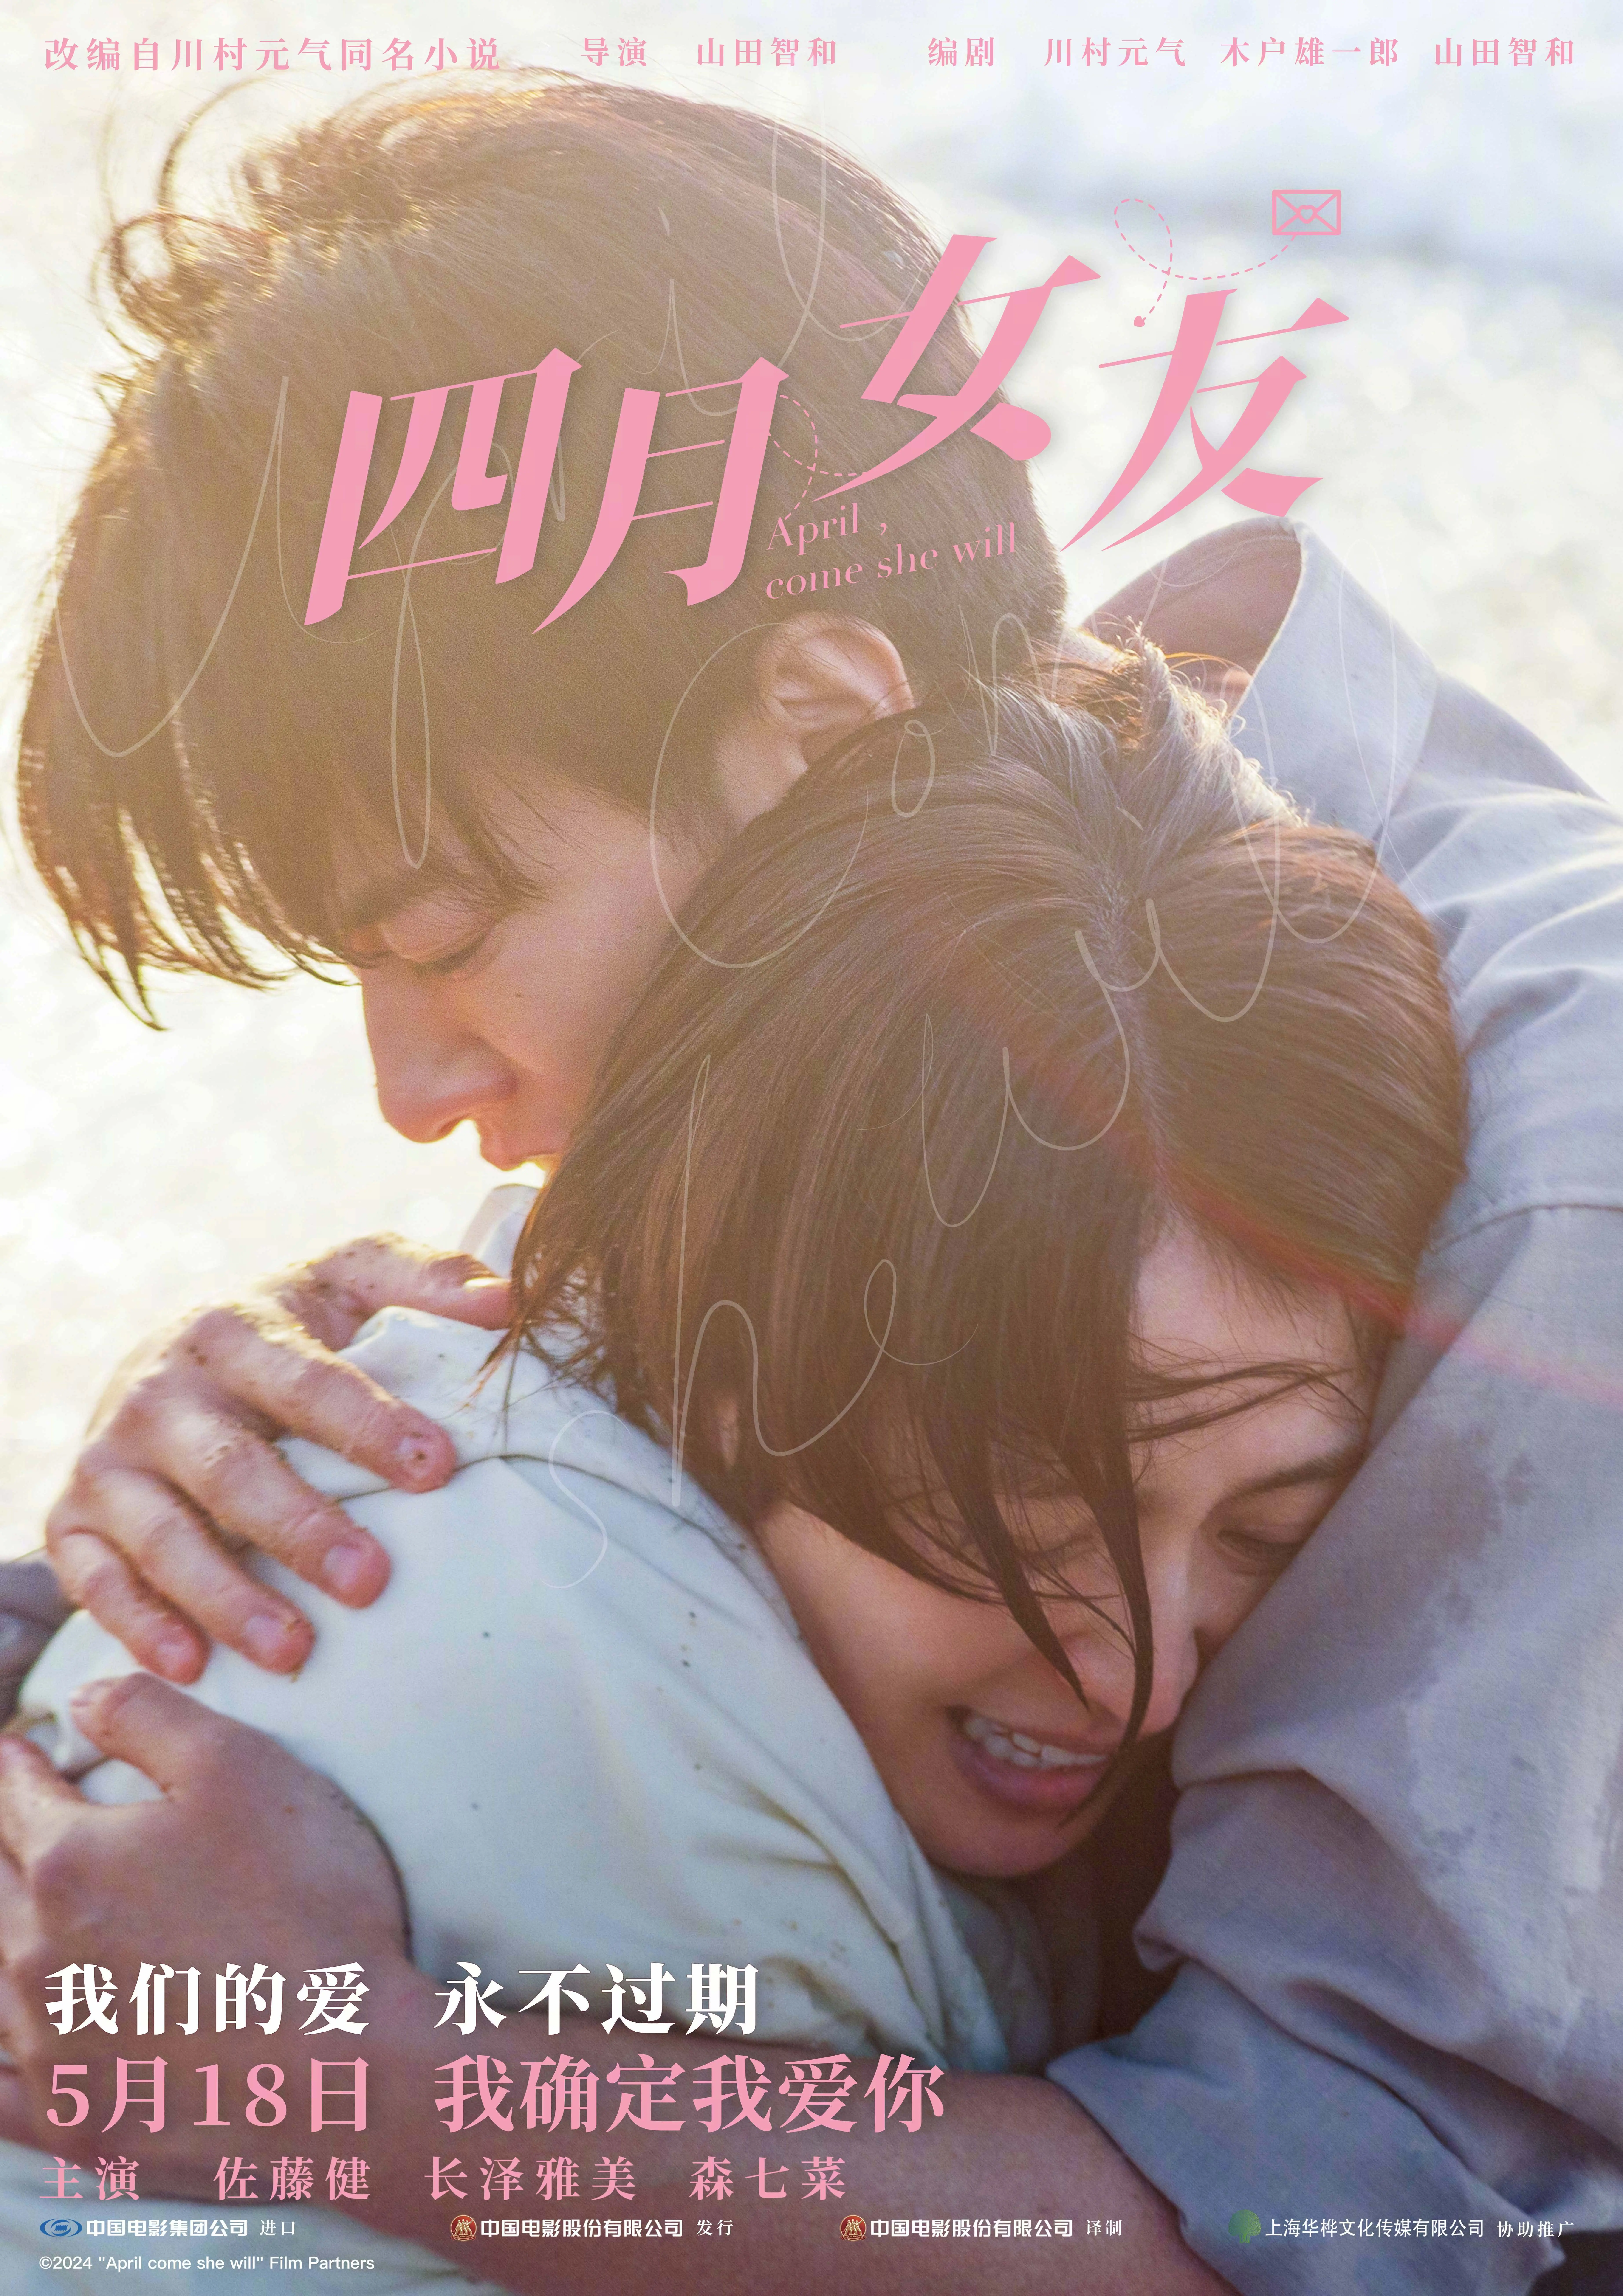 日本电影《四月女友》定档5月18日内地上映 佐藤健长泽雅美演绎唯美爱情